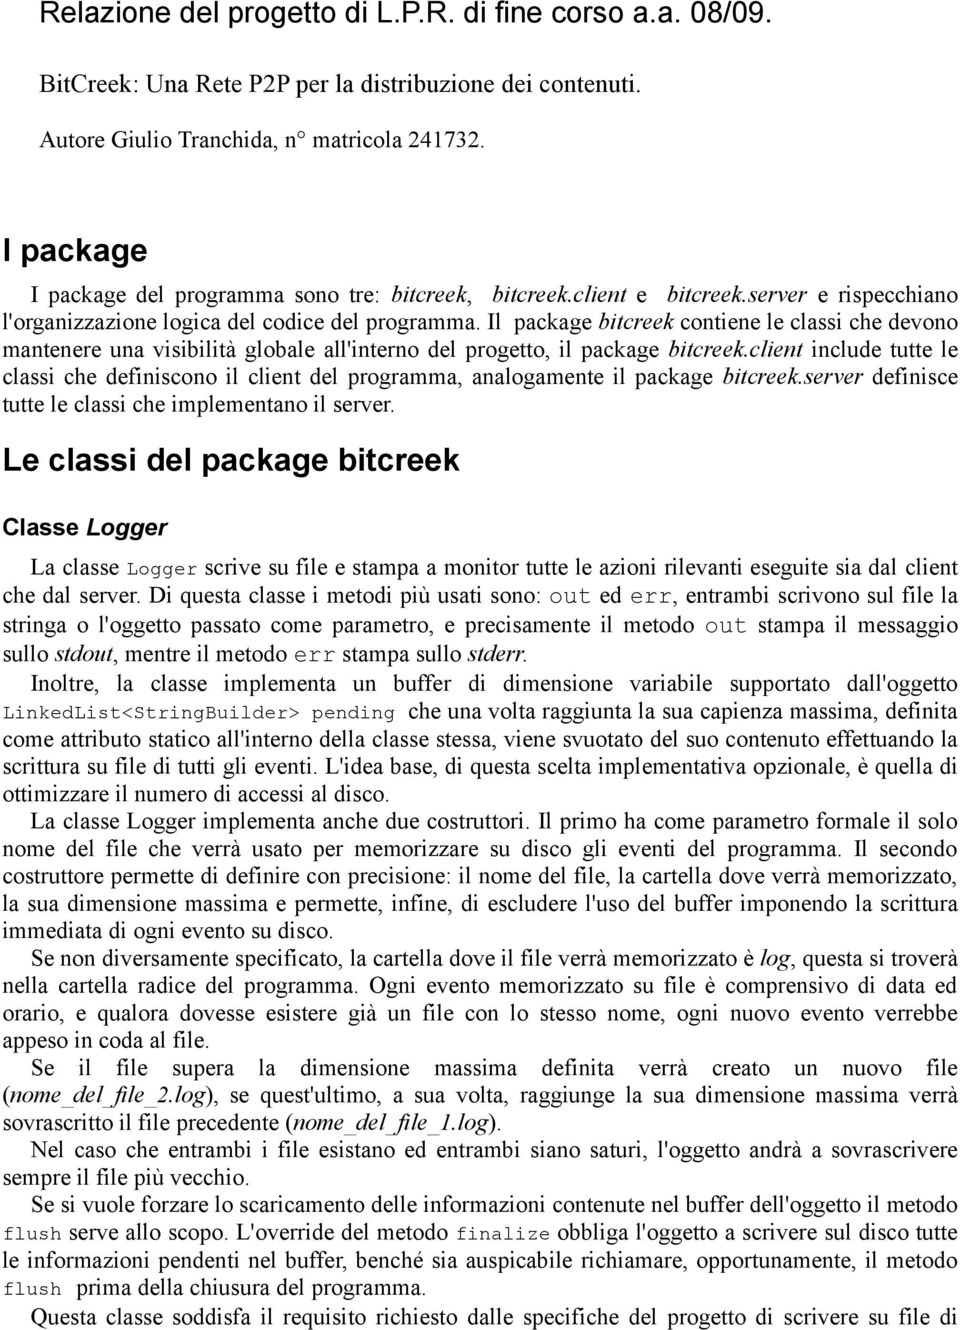 Il package bitcreek contiene le classi che devono mantenere una visibilità globale all'interno del progetto, il package bitcreek.